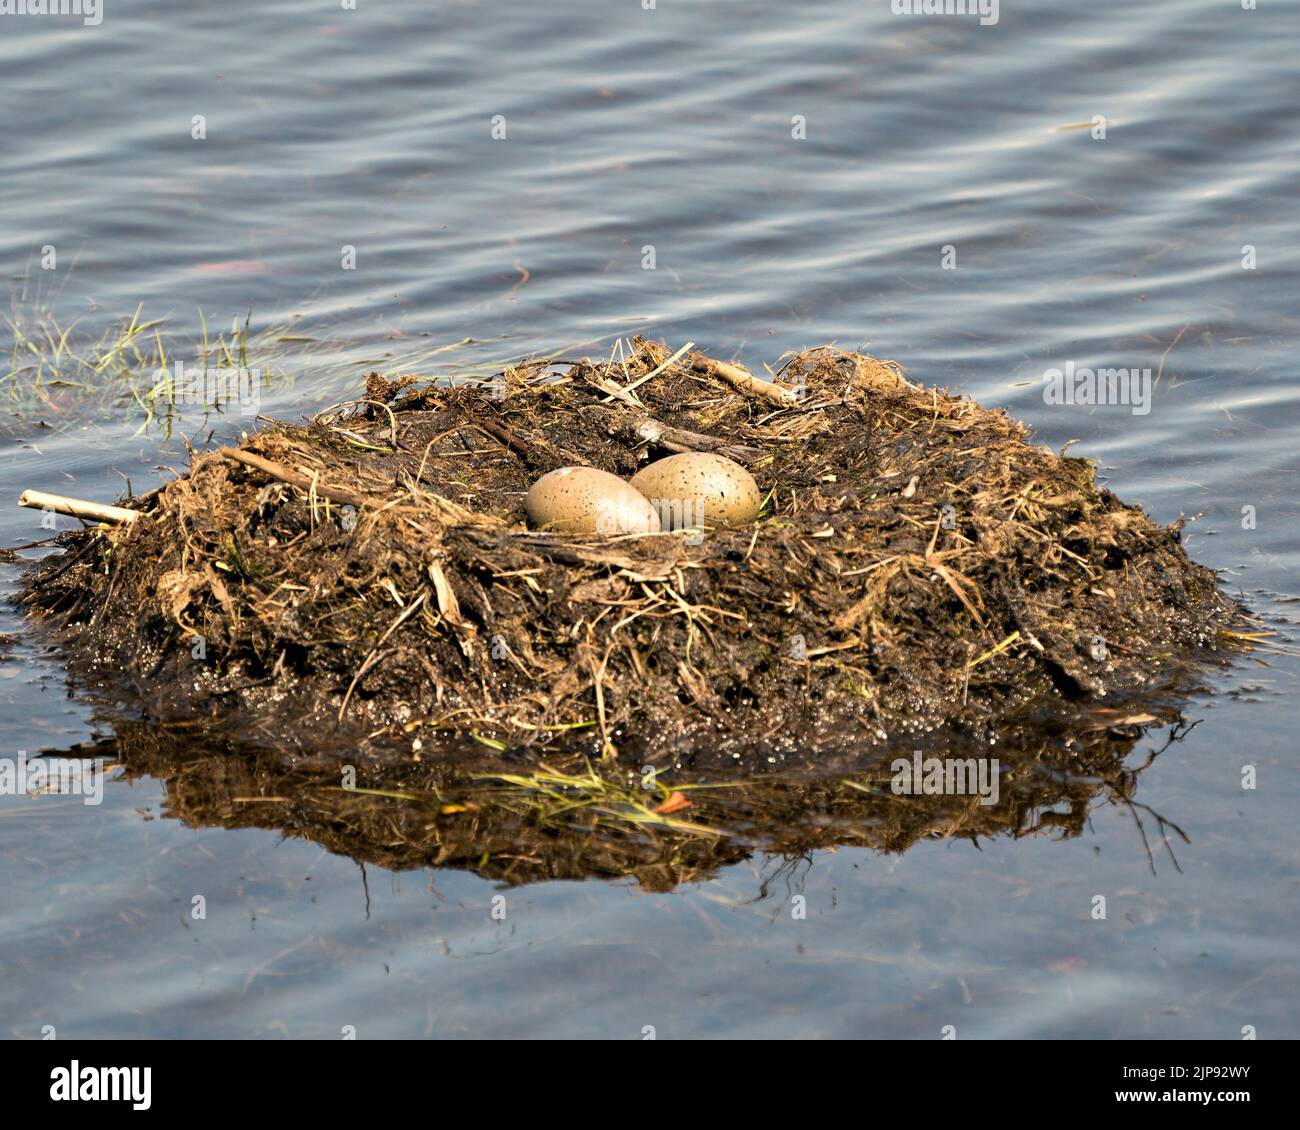 Gemeinsame Looneier und Nestbau mit Sumpfgräsern und Schlamm an der Seite des Sees in ihrer Umgebung und ihrem Lebensraum in einer magischen Zeit. Bild. Stockfoto